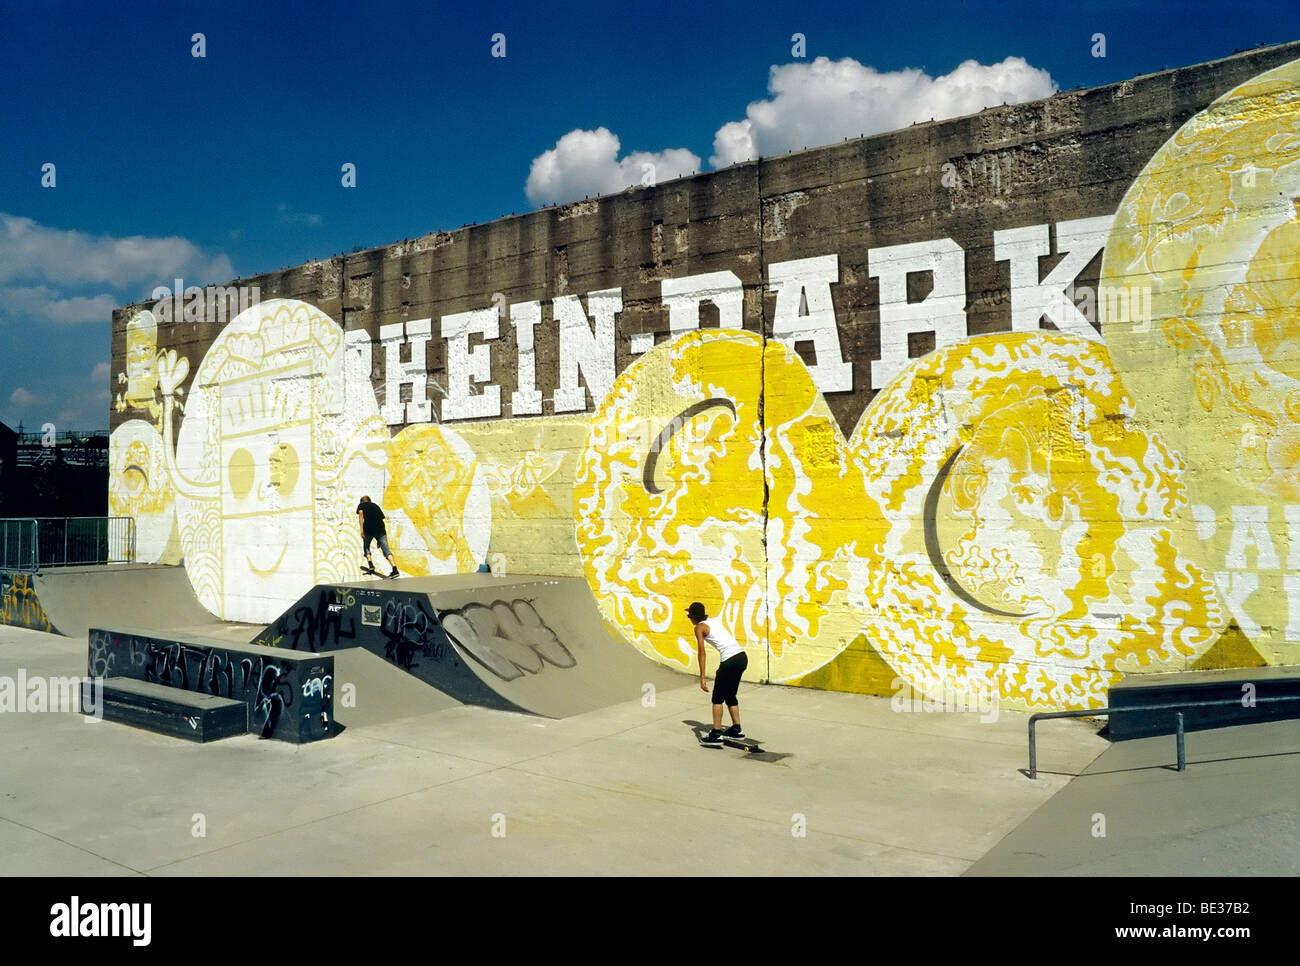 El skate park, antiguo muro de hormigón con graffiti, el Rheinpark, nuevo barrio de la ciudad a orillas del Rin, Duisburg Hochfeld, Norte Rhine-Westphal Foto de stock